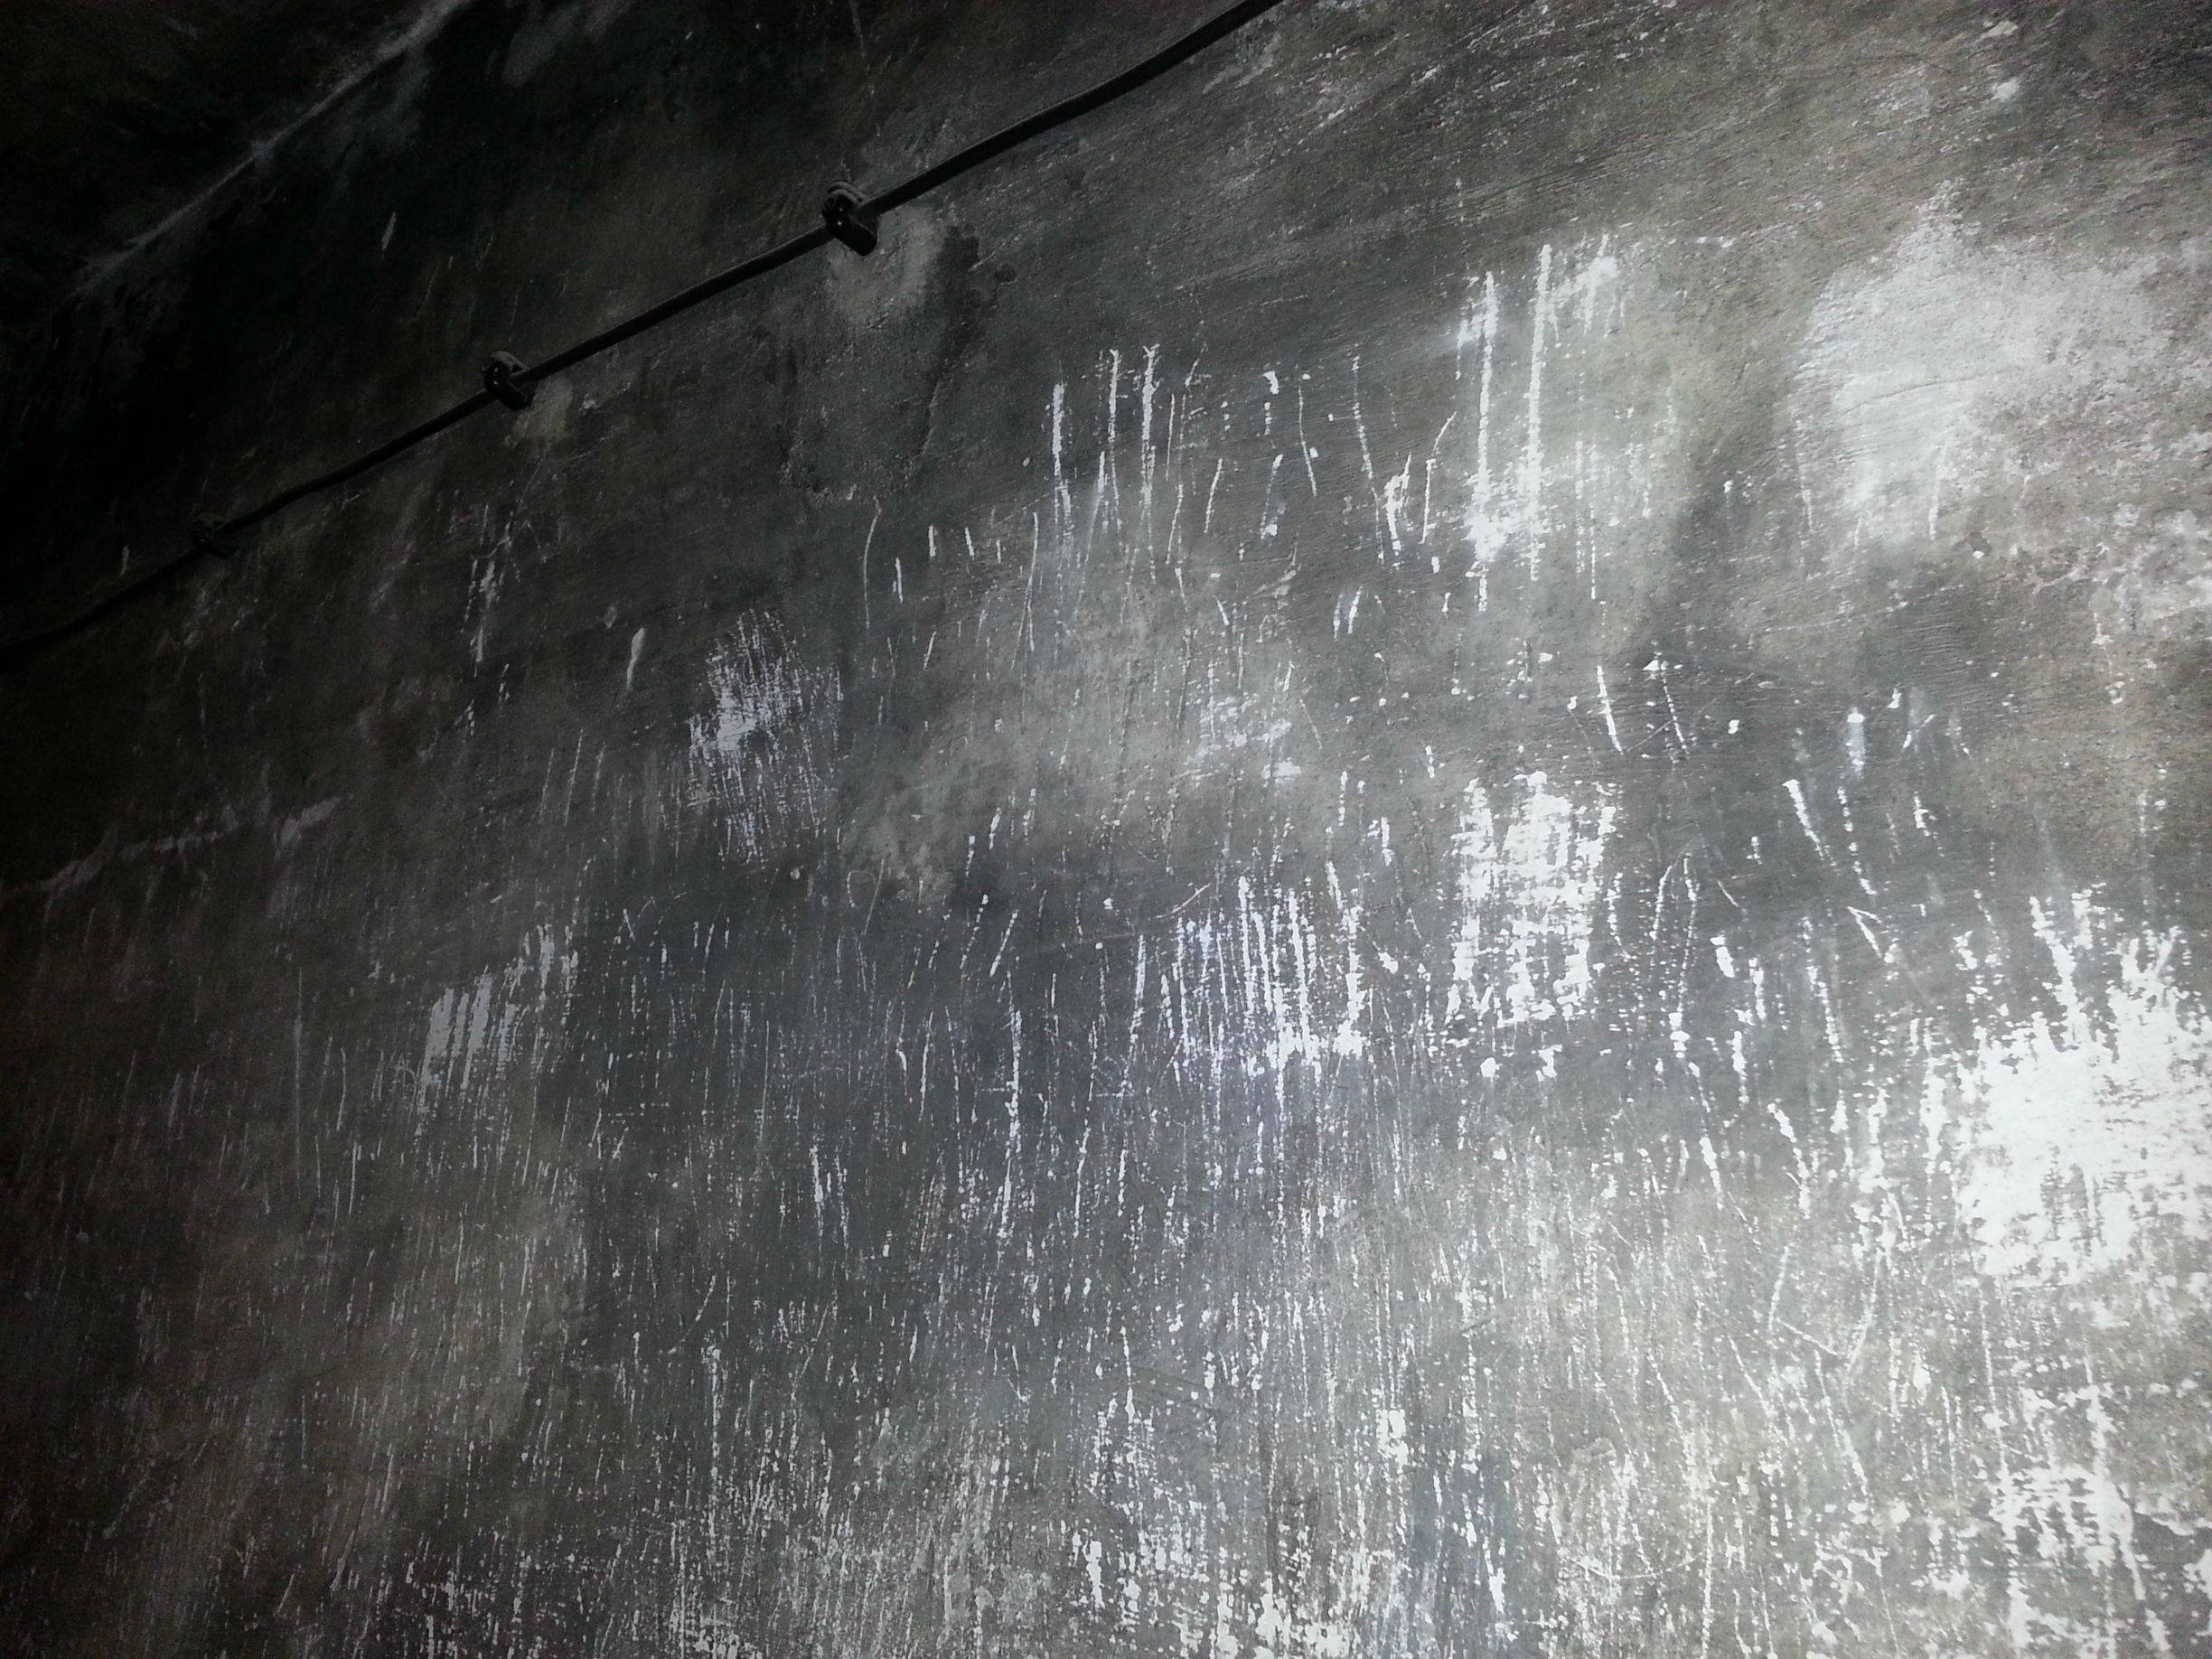 Scratch marks inside an Auschwitz gas chamber